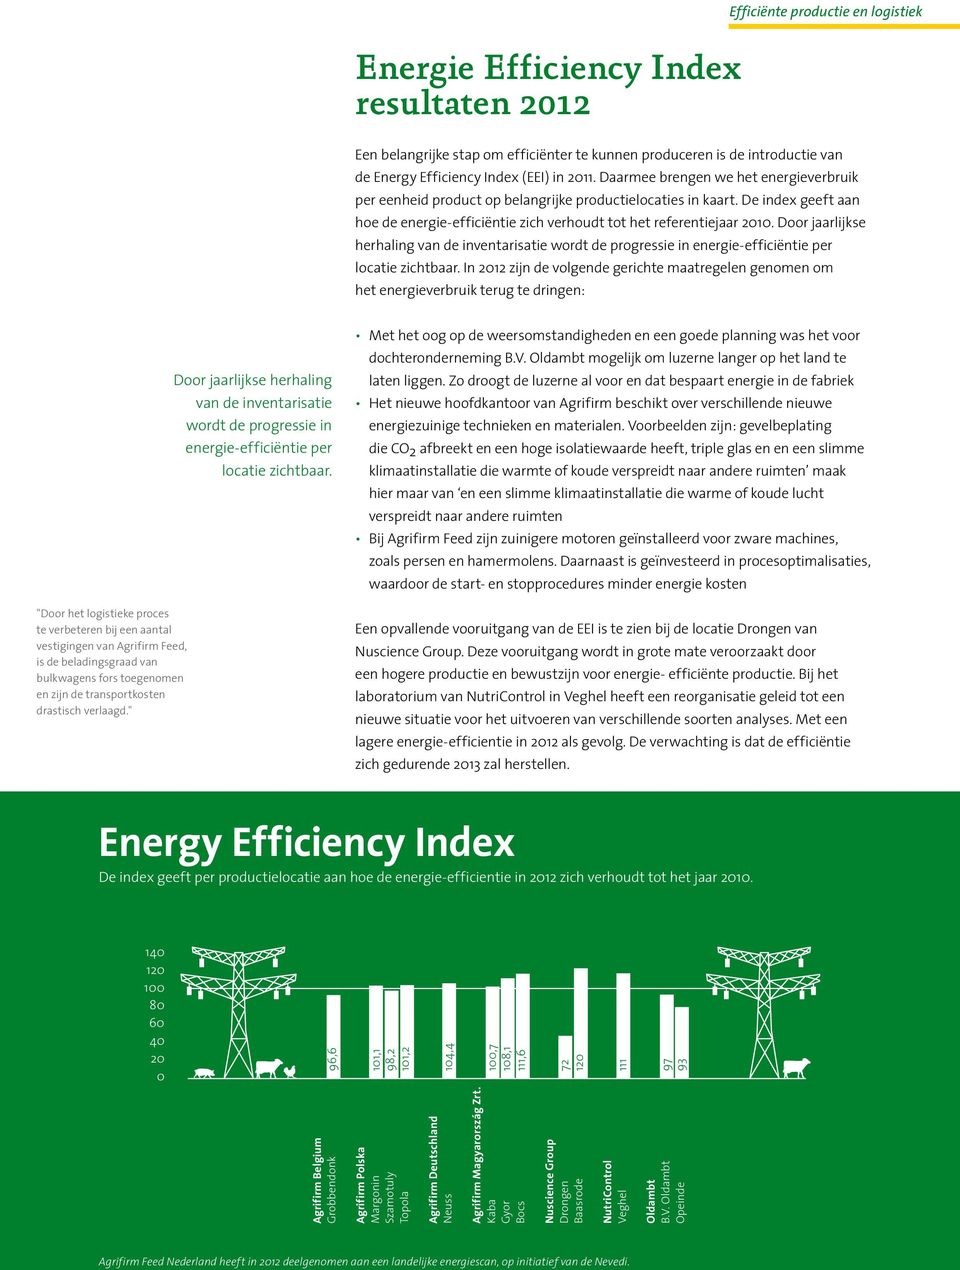 Door jaarlijkse herhaling van de inventarisatie wordt de progressie in energie-efficiëntie per locatie zichtbaar.